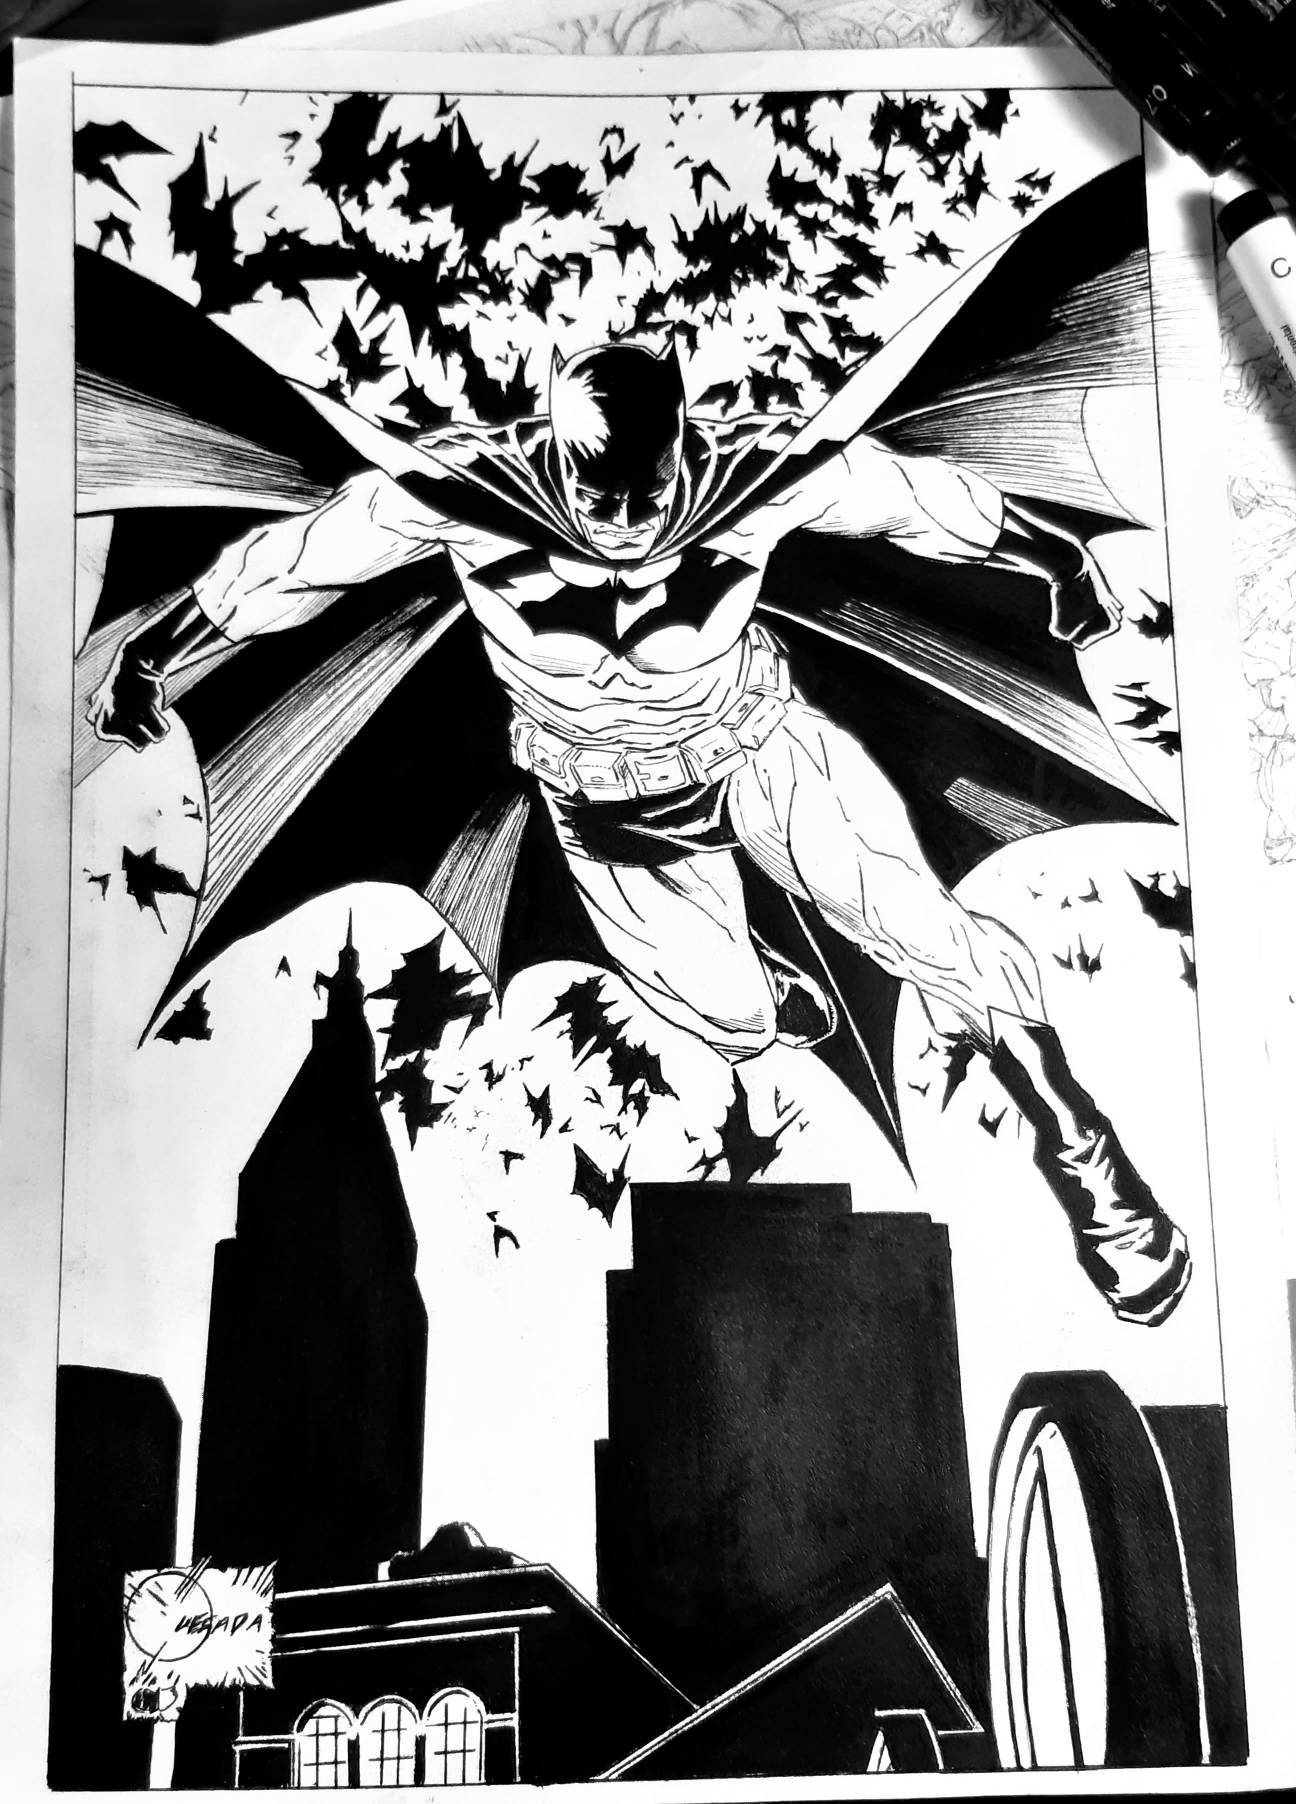 Batman by Joe Quesada by blubber1976 on DeviantArt